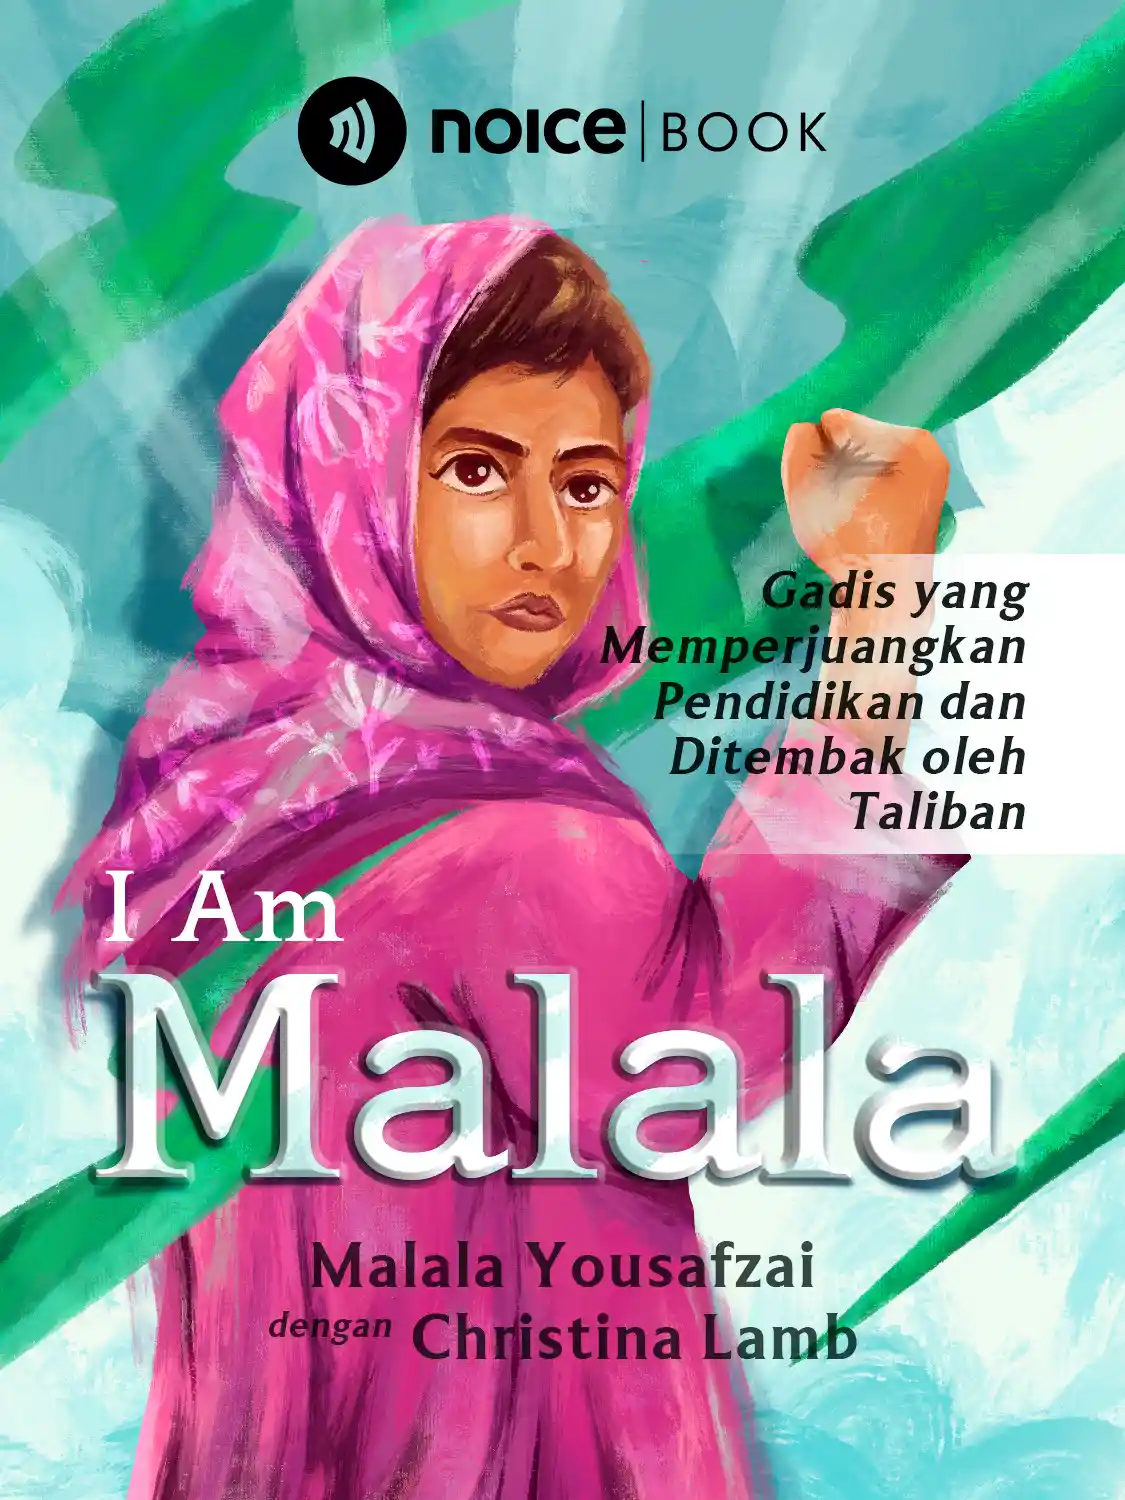 #2 Ayah Malala mendorong Malala untuk meraih pendidikan setinggi mungkin.